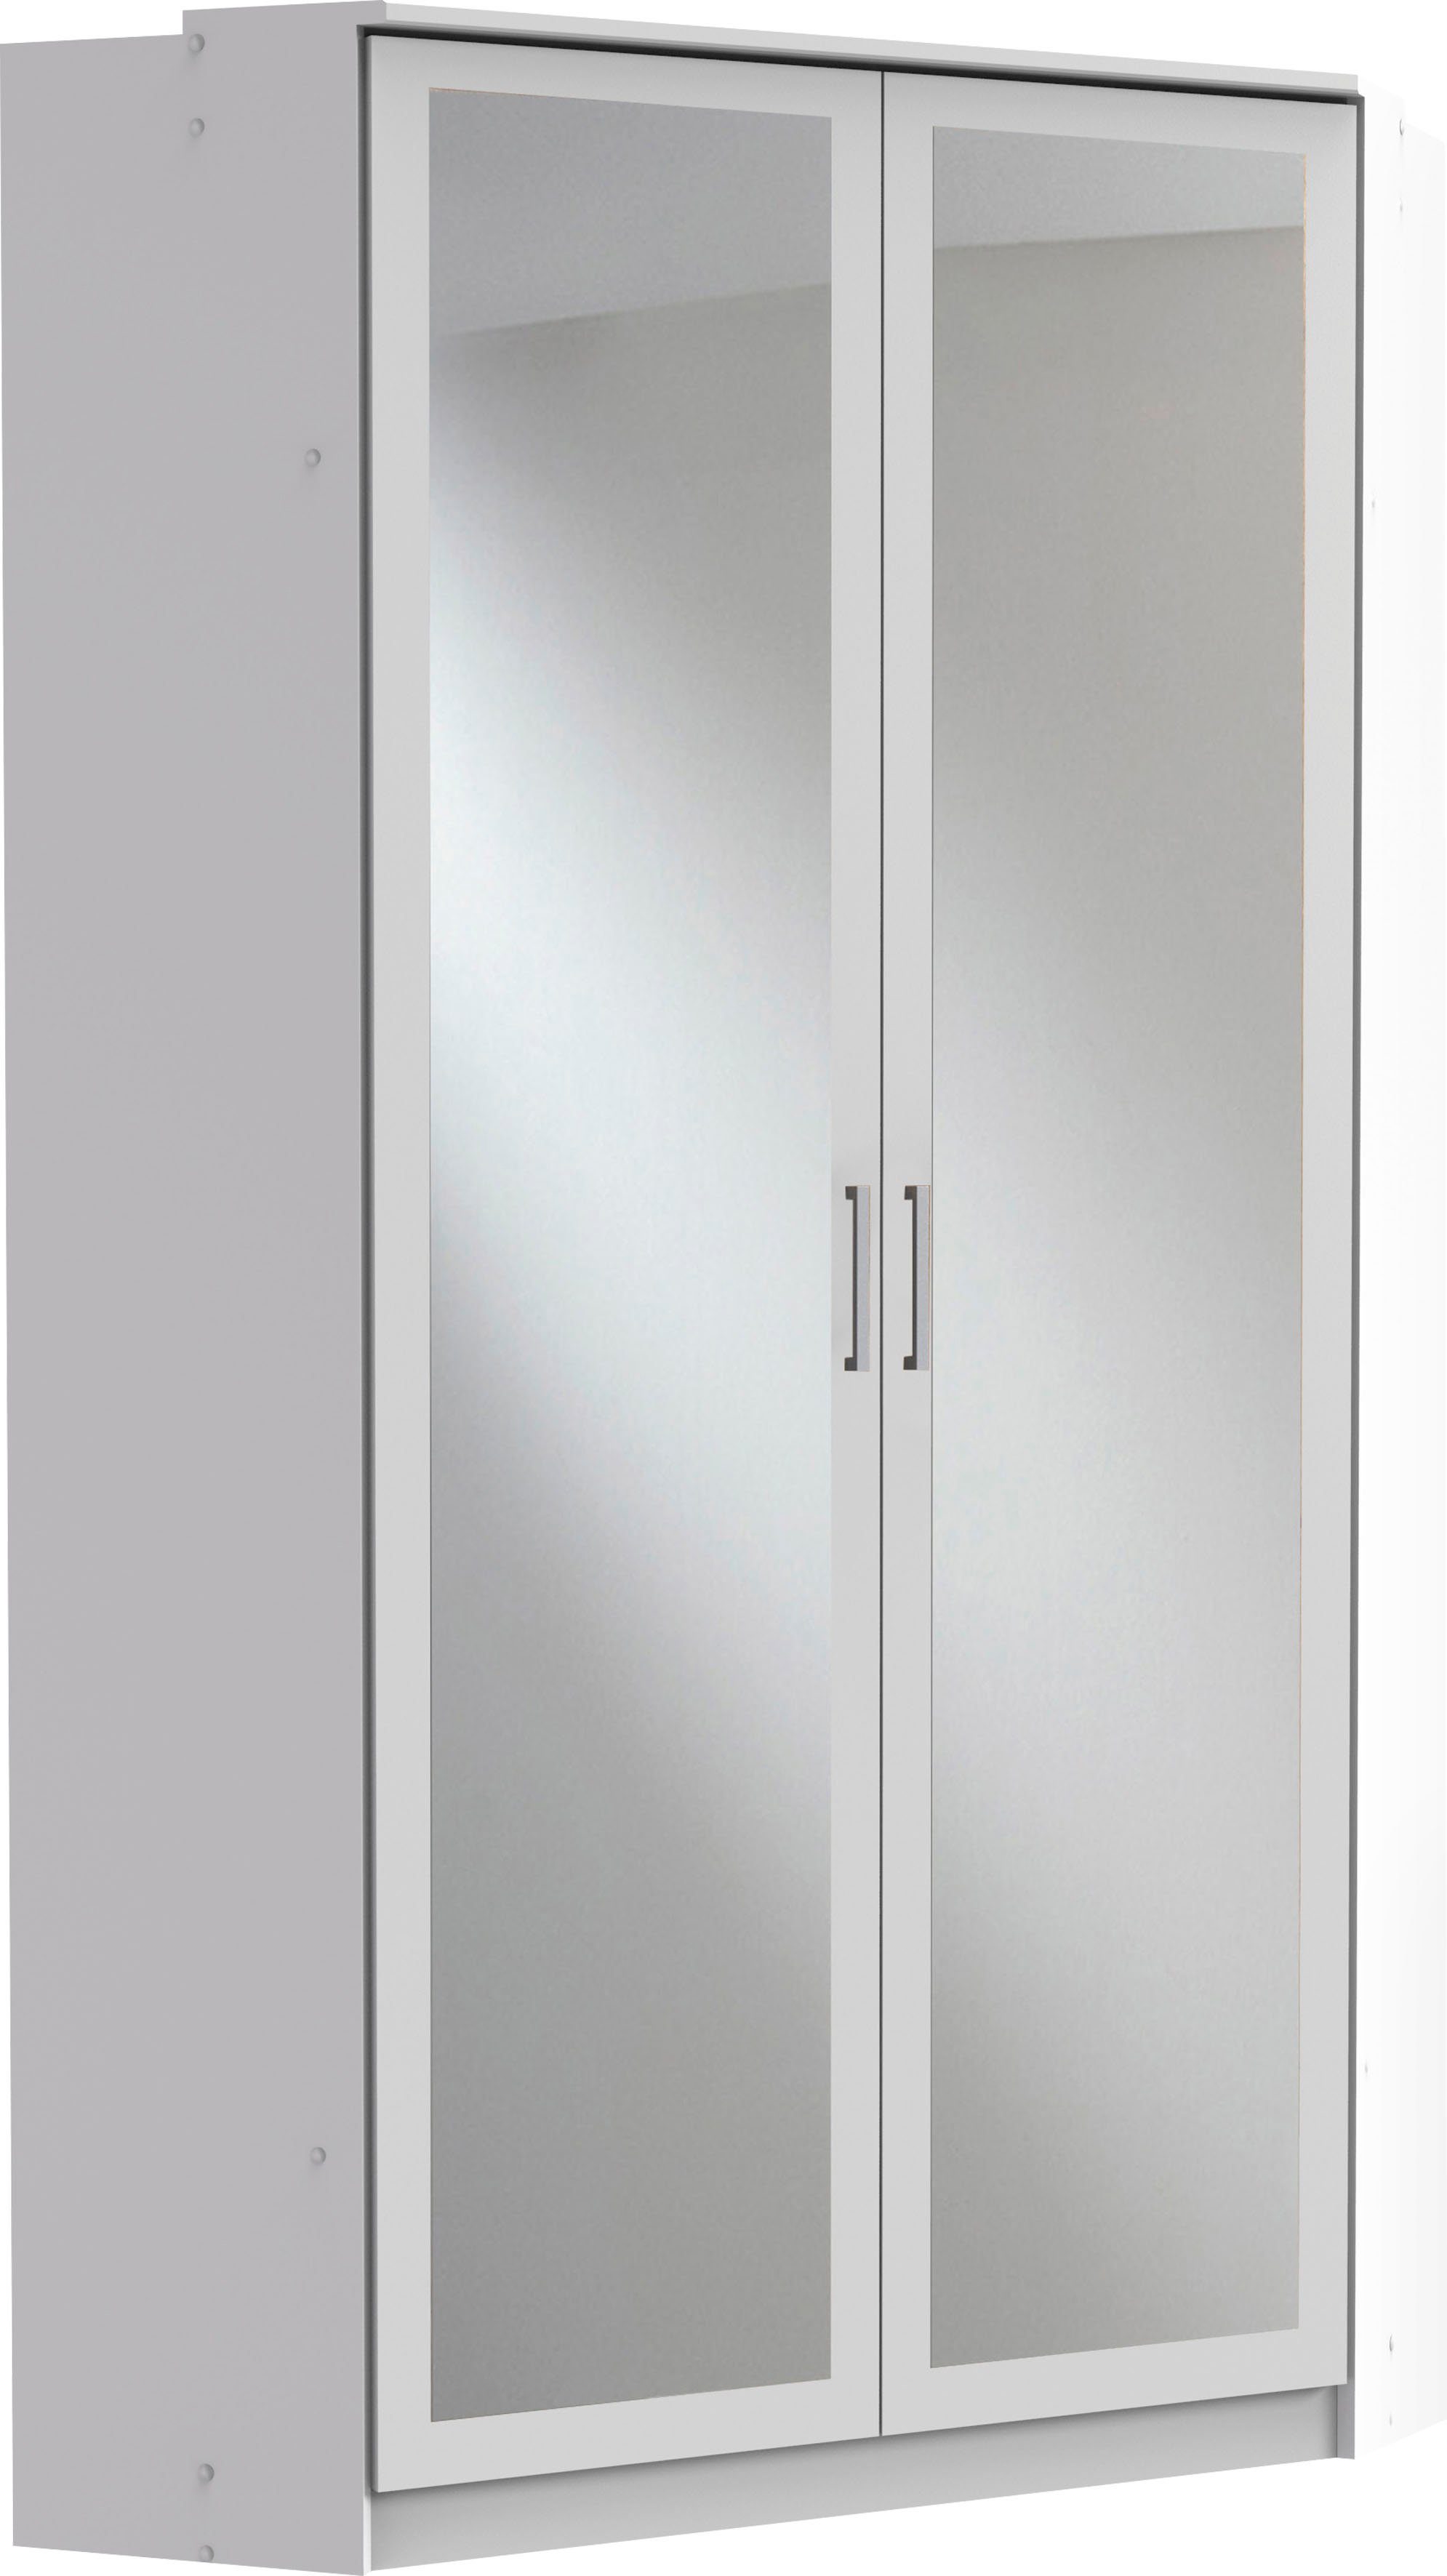 Wimex Eckkleiderschrank weiß 2 Spiegeltüren mit Click